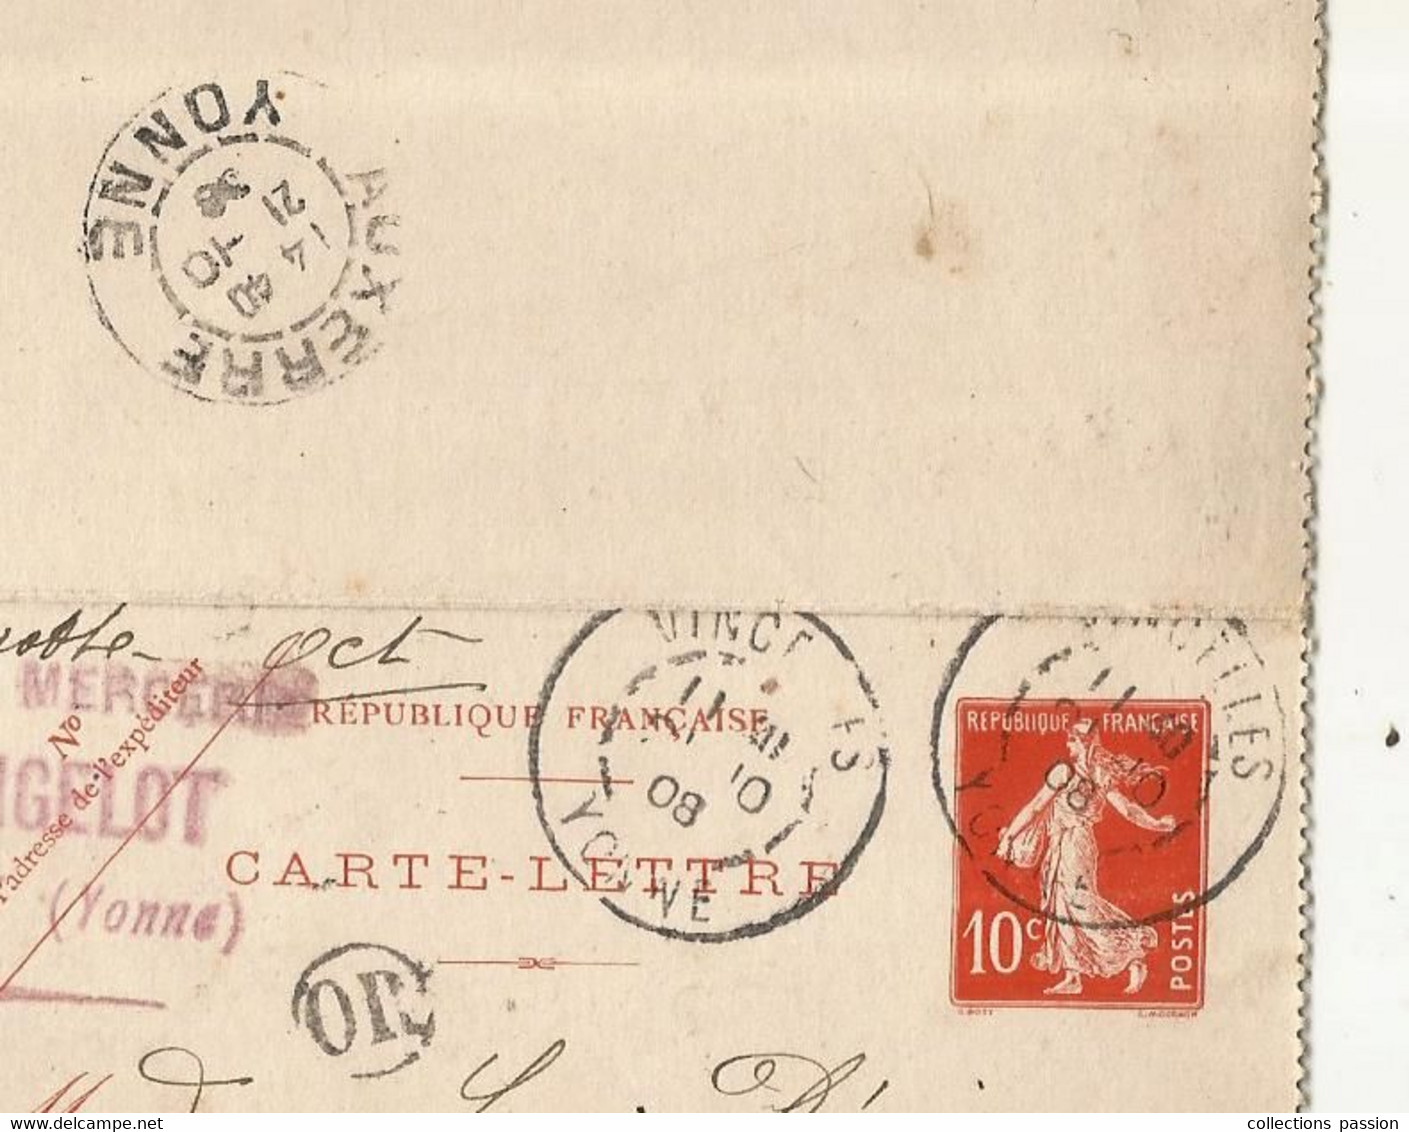 CARTE-LETTRE, Entier Postal, VINCELLES, YONNE, AUXERRE, 1909, OR,  2 Scans - Cartes-lettres